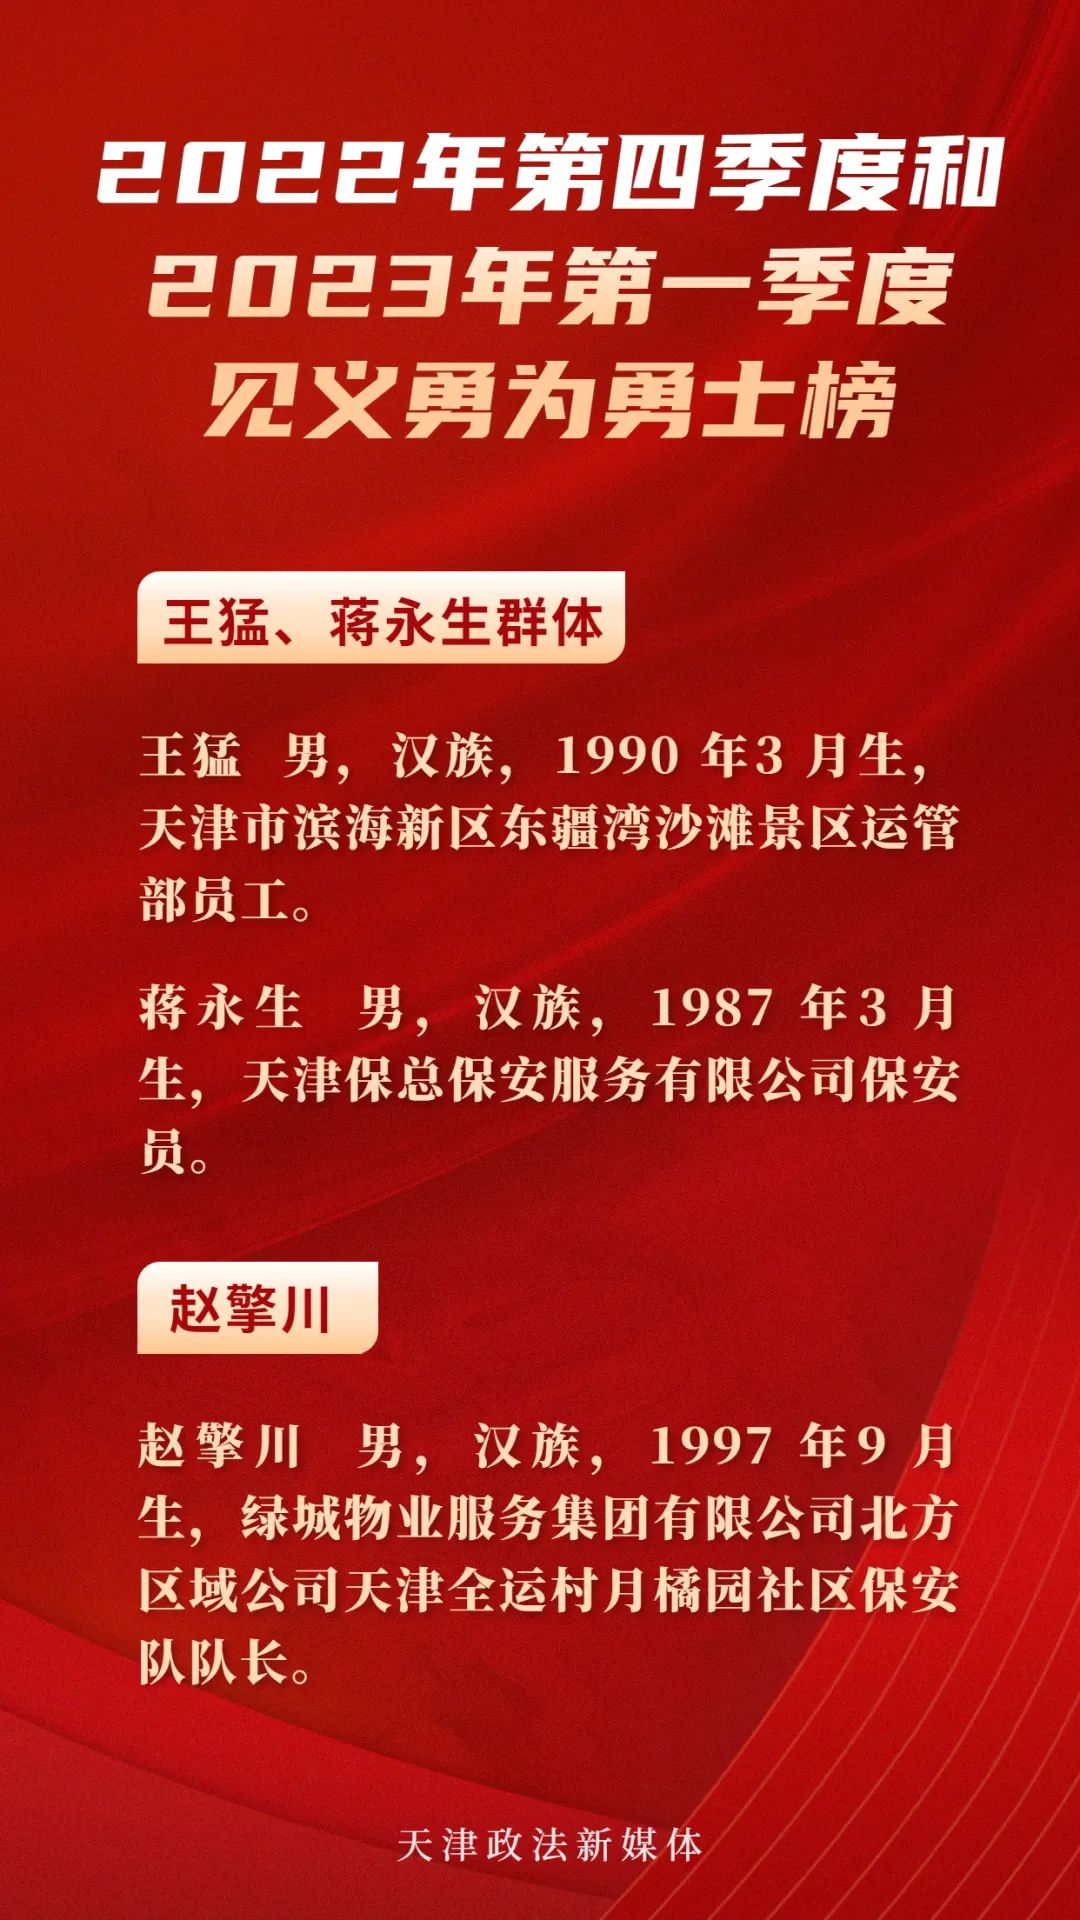 津南区召开2023年第一季度见义勇为人员表彰大会-文明网-北方网